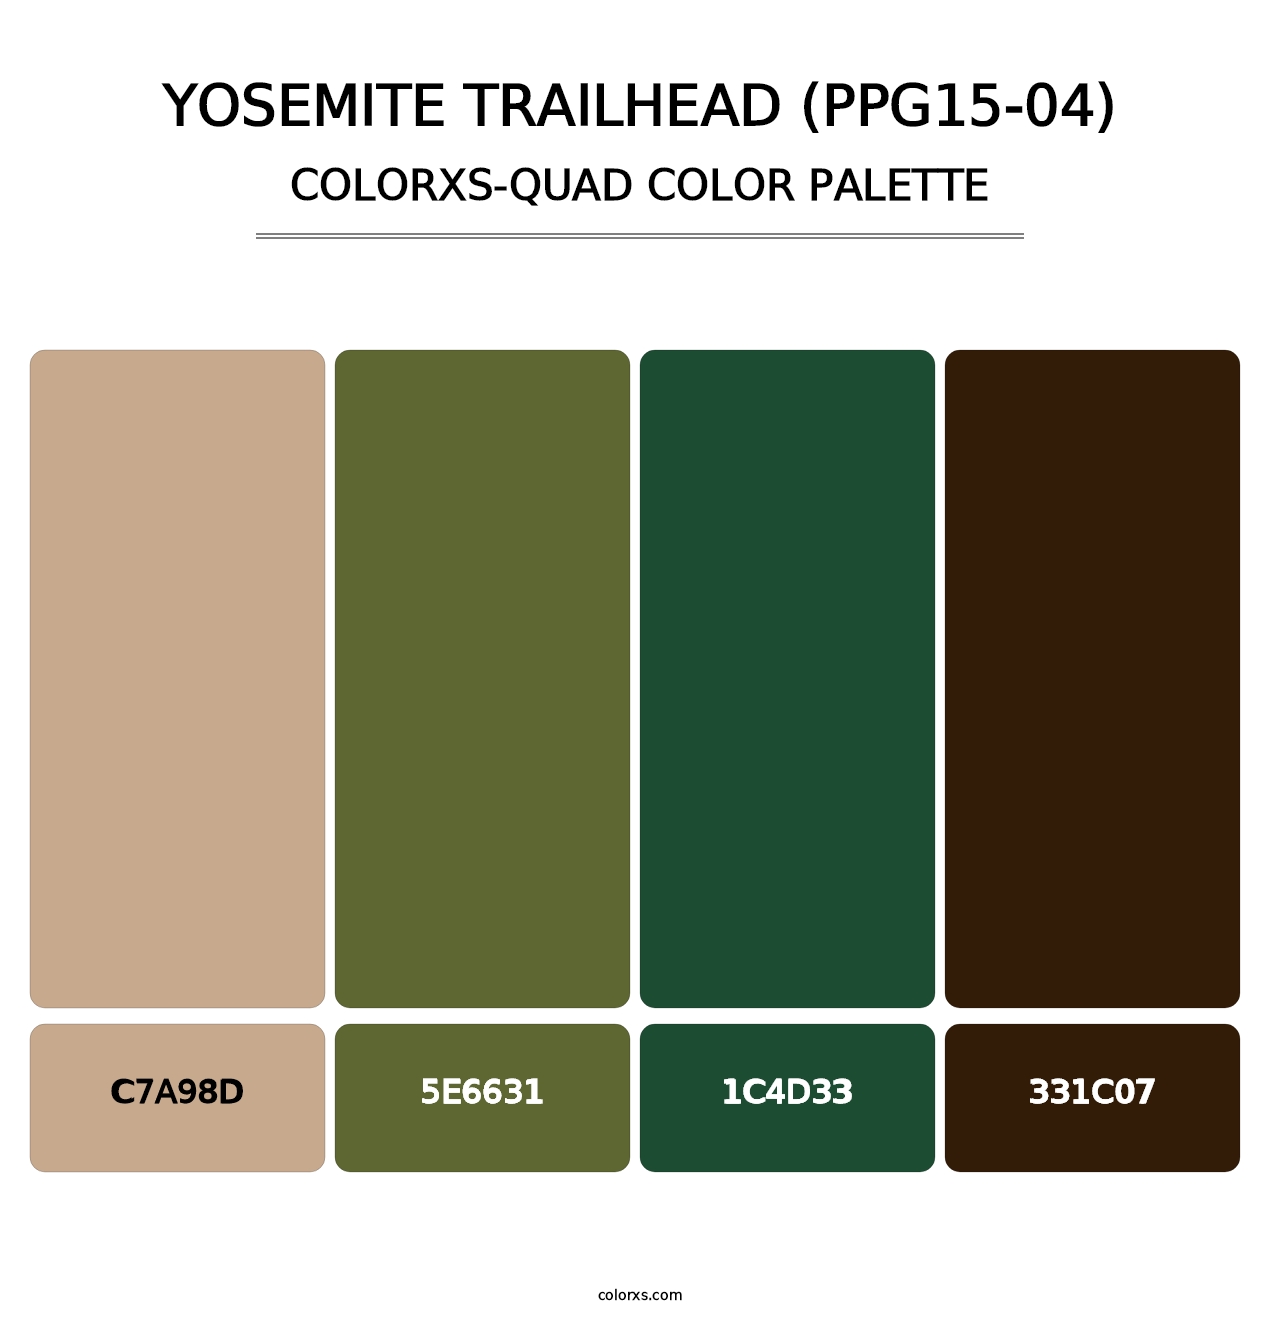 Yosemite Trailhead (PPG15-04) - Colorxs Quad Palette